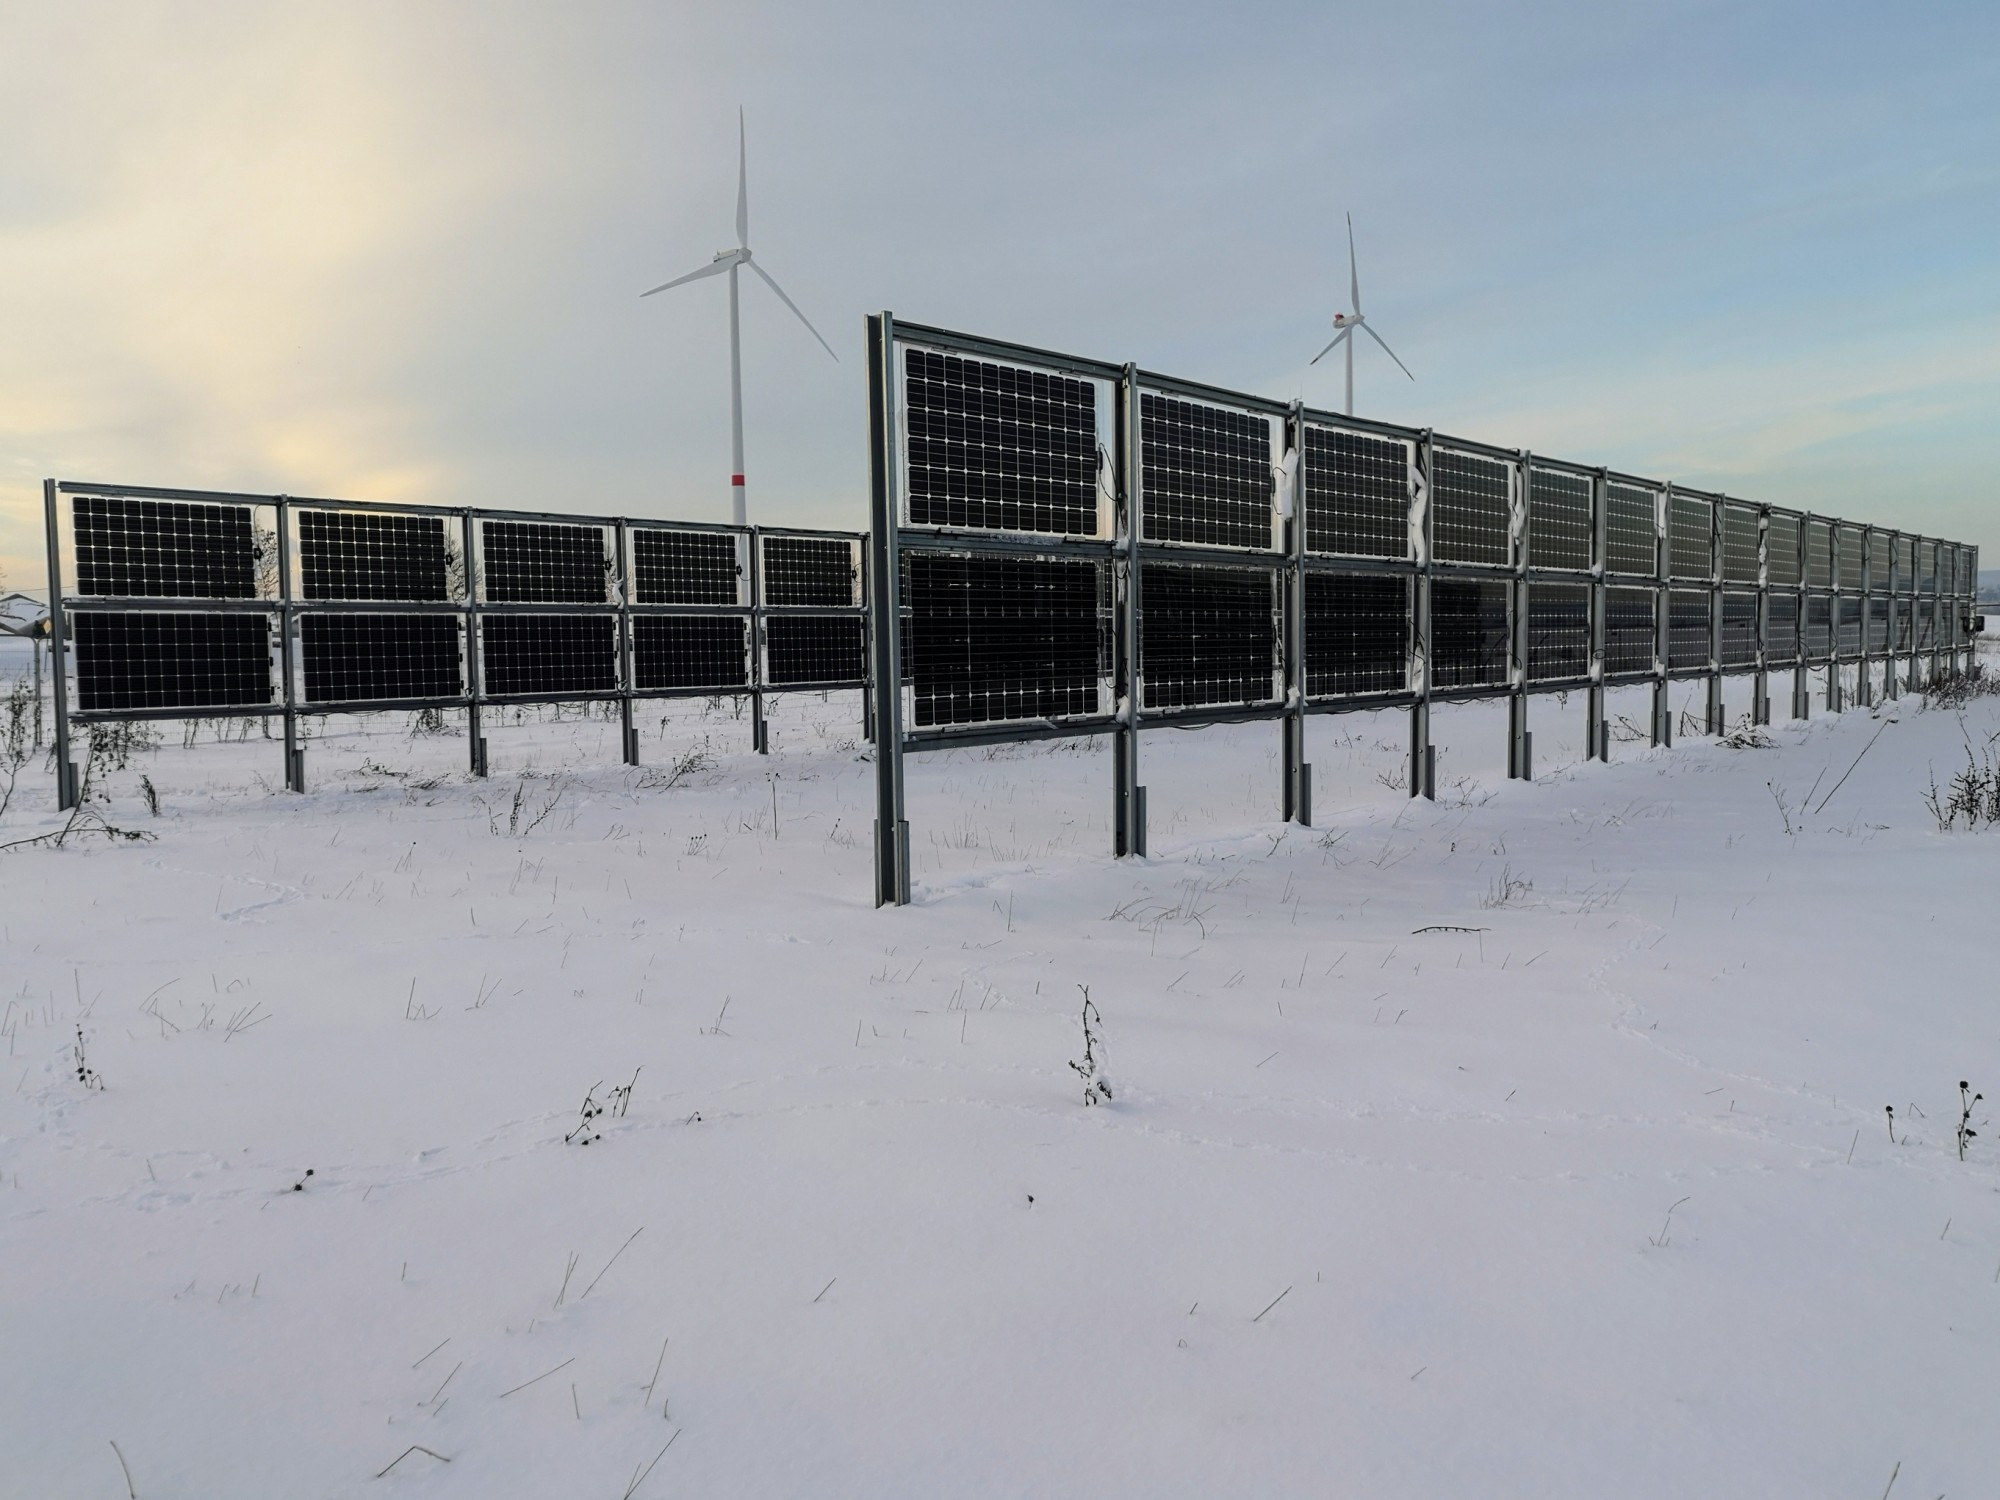 Les modules solaires bifaciaux peuvent produire une quantité d'électricité supérieure à la moyenne, surtout en hiver, lorsque les besoins sont les plus importants. L'altitude augmente leur efficacité. La réflexion de la neige améliore le rendement, ce qui